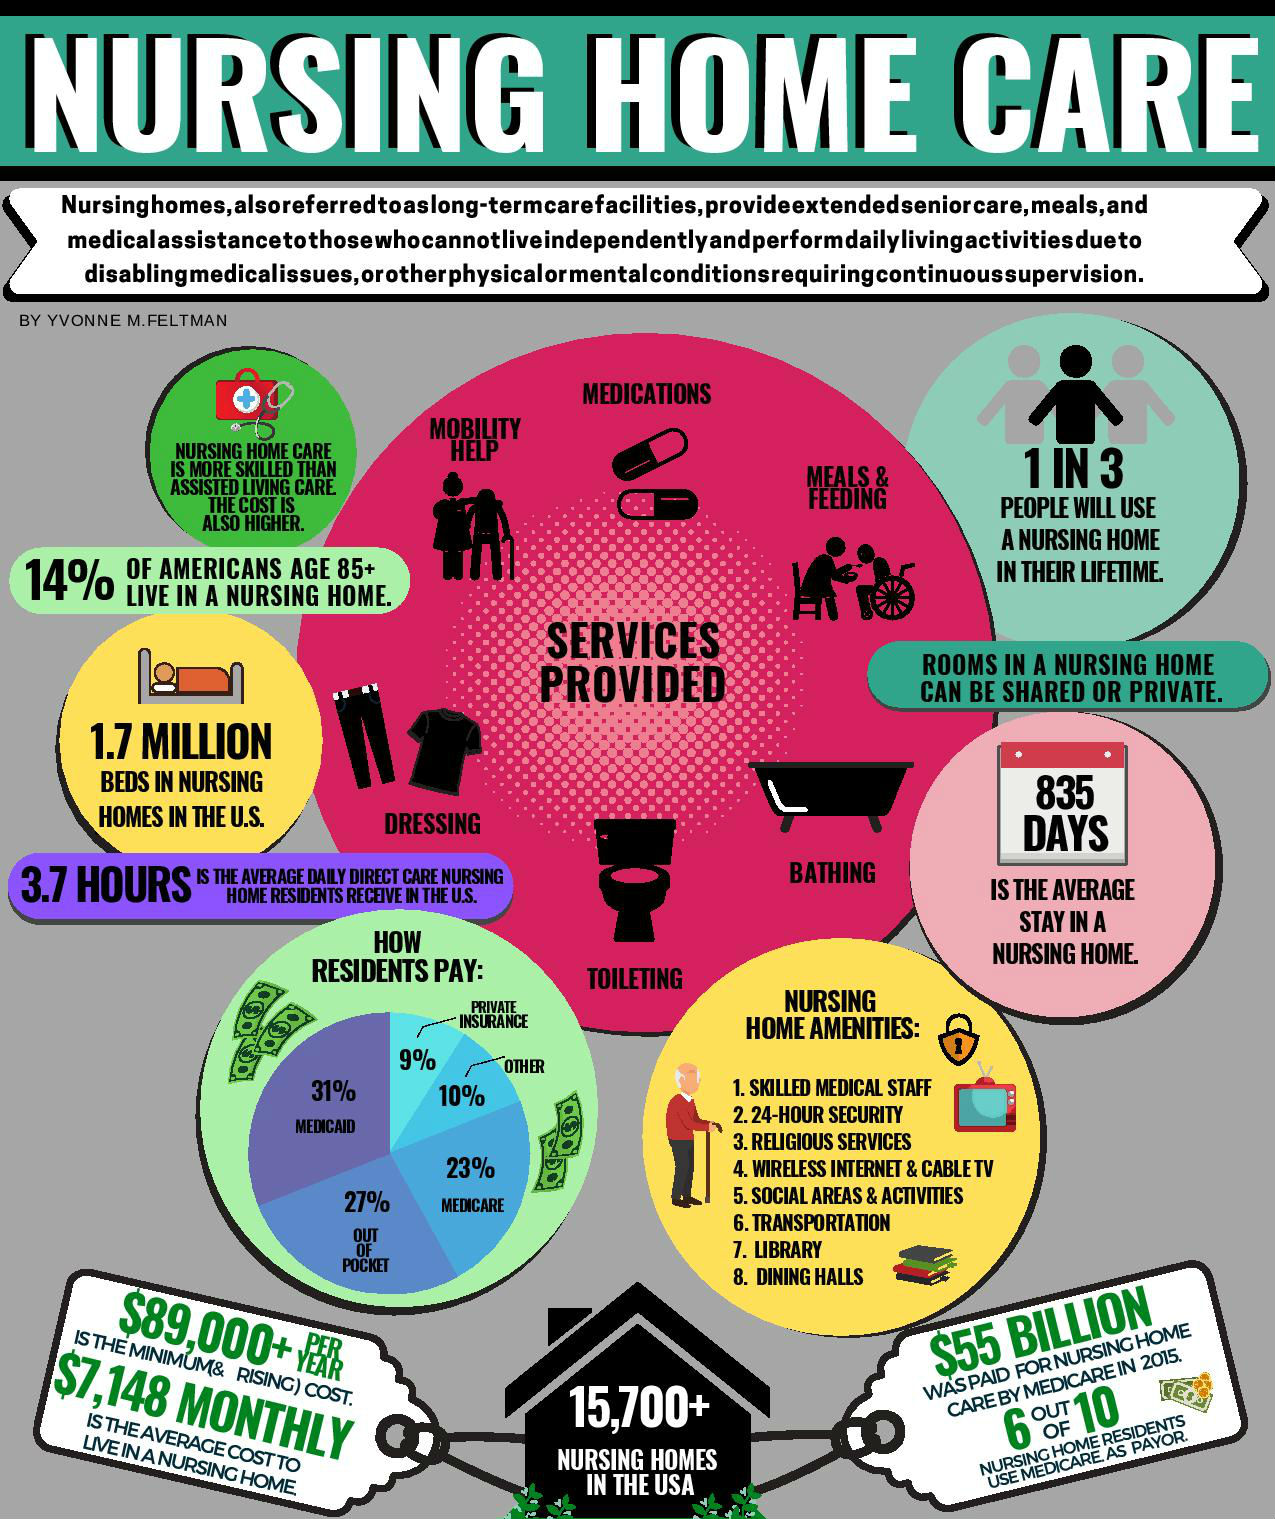 Nursing Home Care | Find Nursing Homes Near Me | SeniorAdvice.com